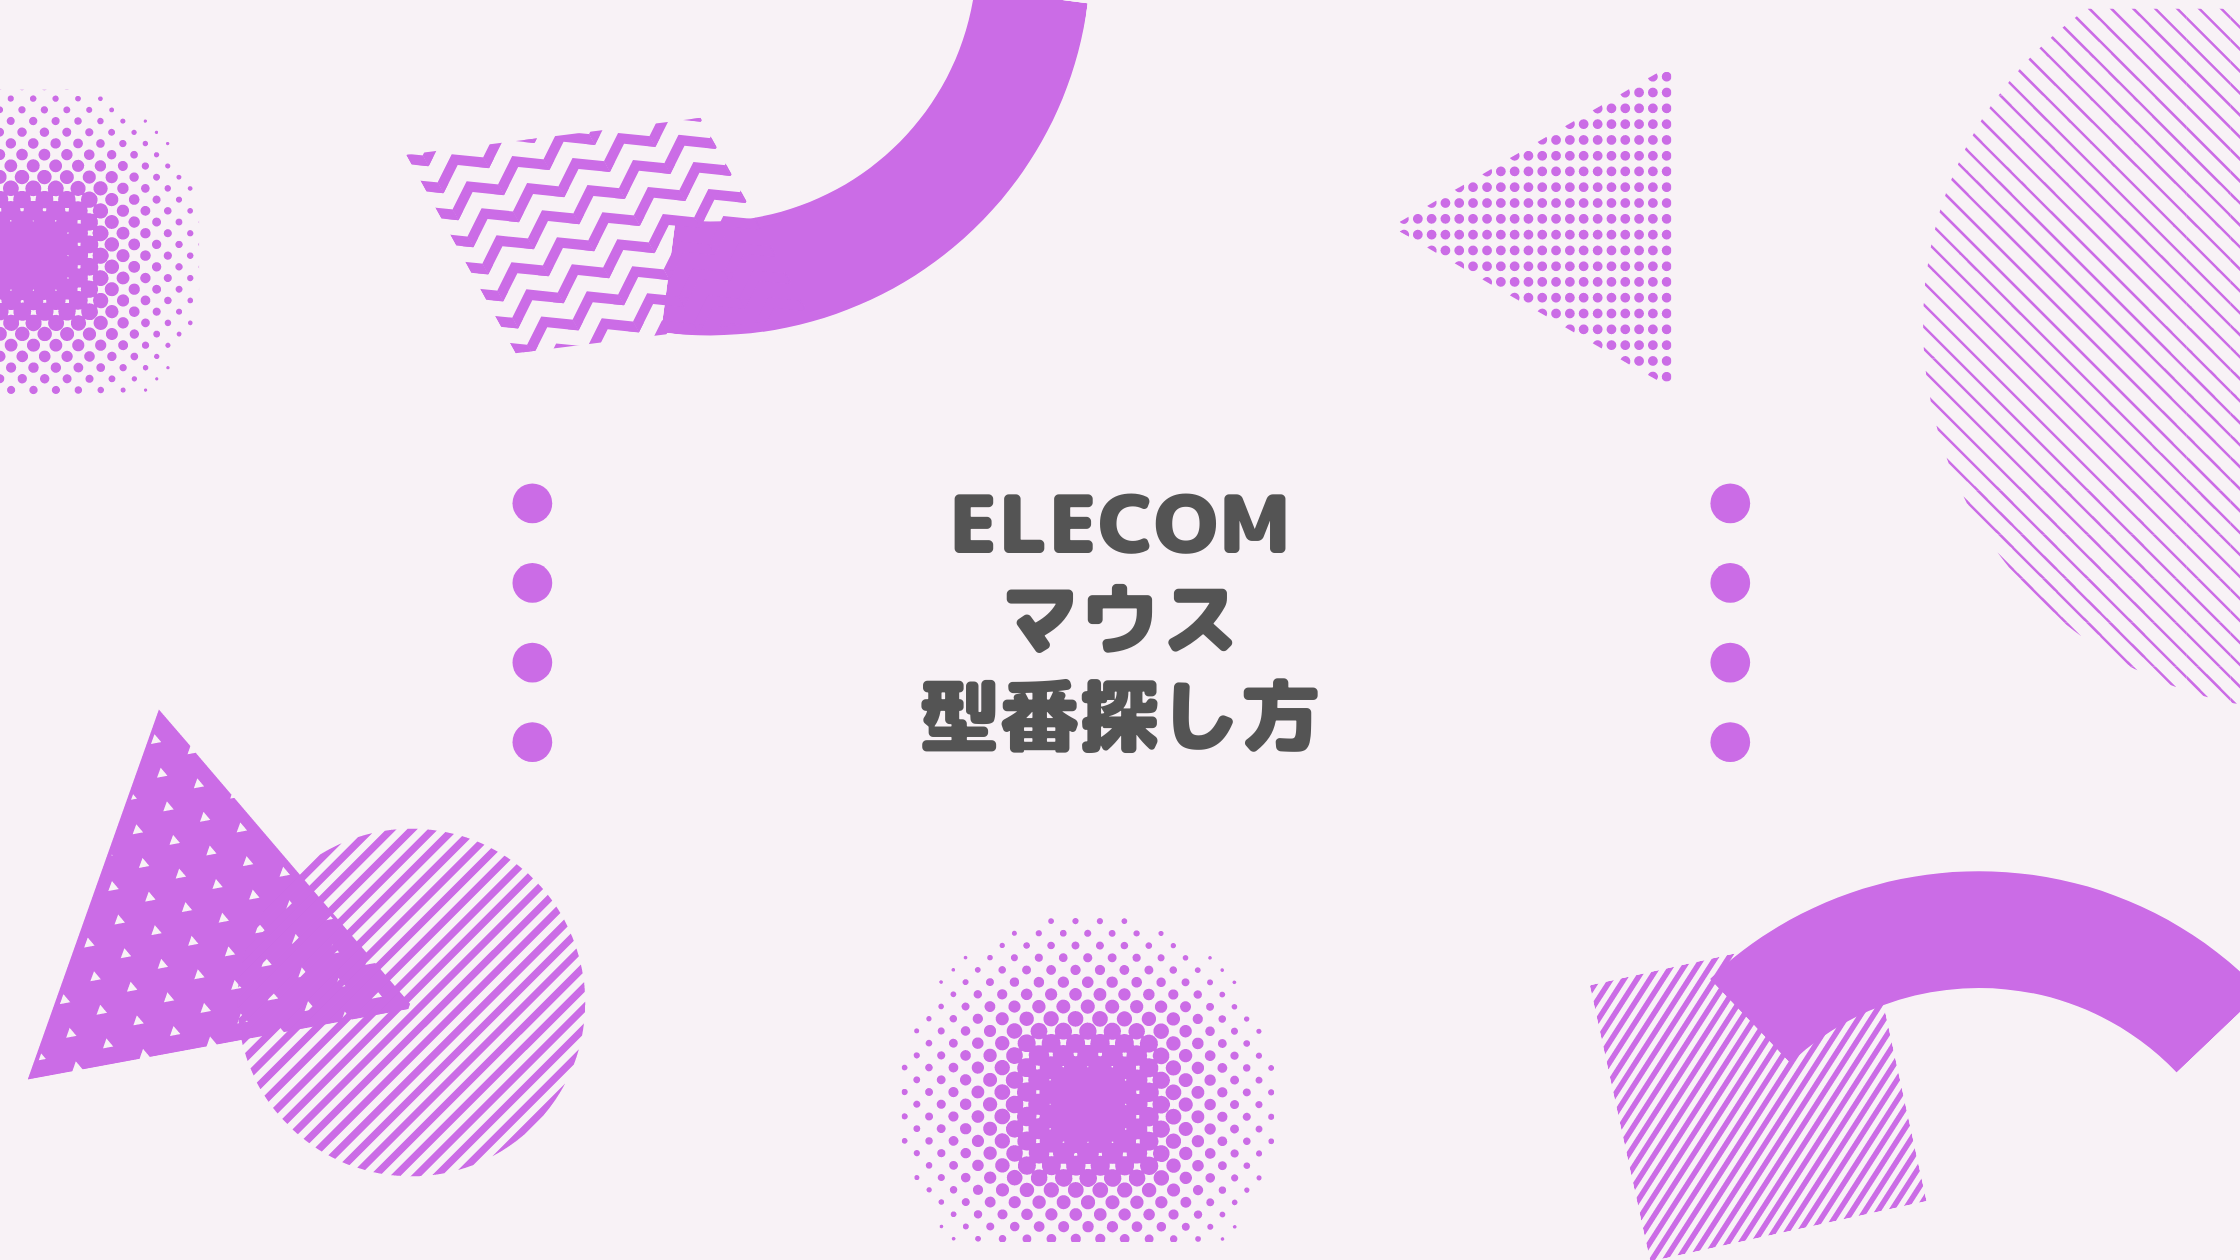 エレコム(ELECOM) マウス 型番探し方